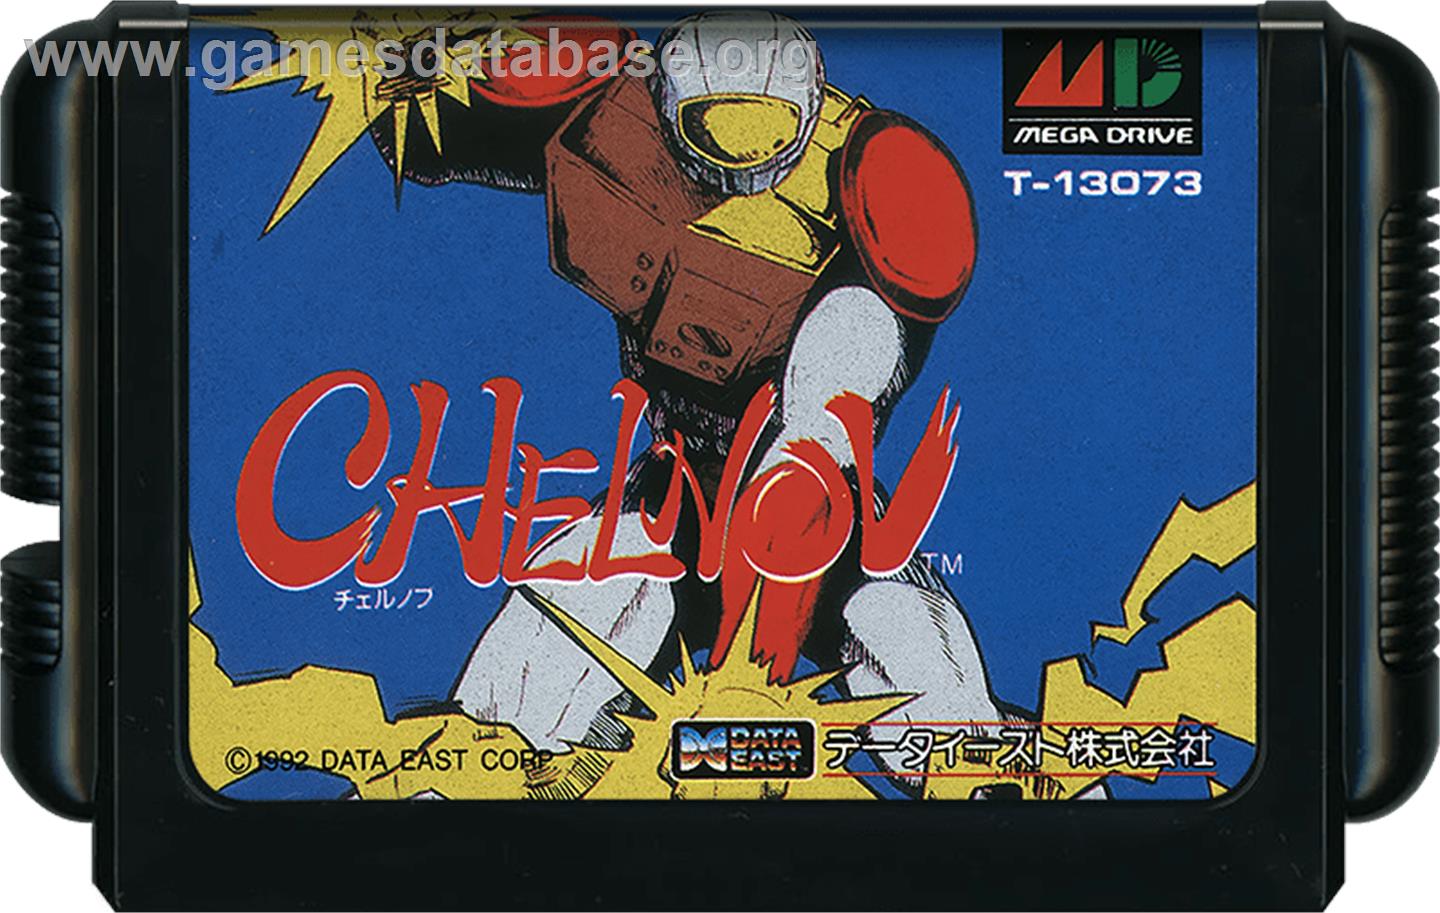 Chelnov - Sega Genesis - Artwork - Cartridge